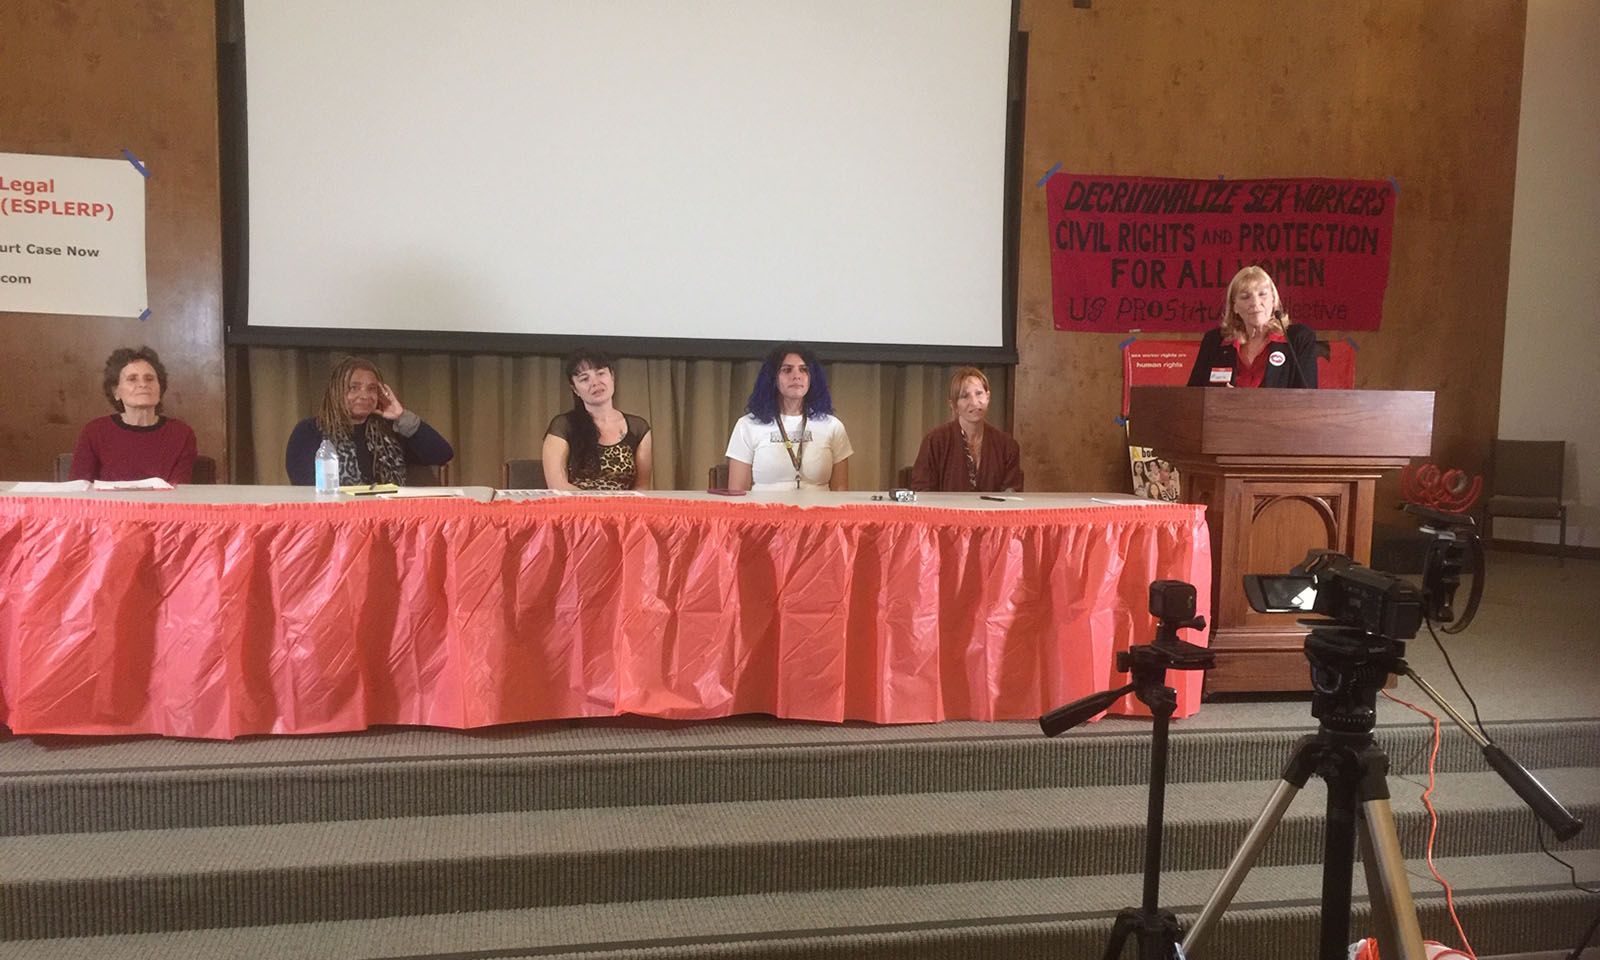 Sacramento Sex Worker Panel Discusses Latest Legal Developments